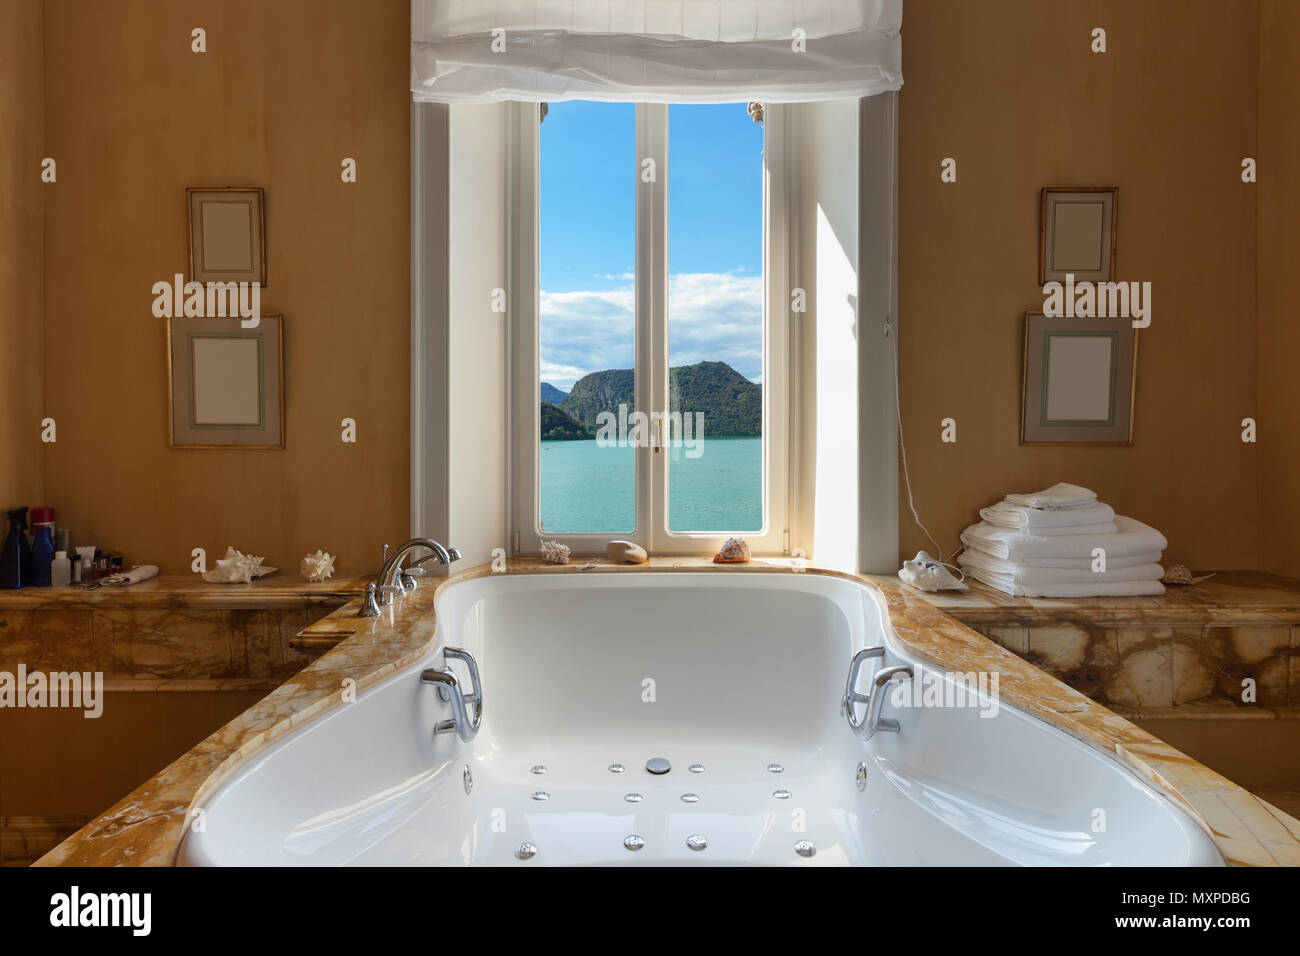 Intérieur d'un hôtel particulier de luxe, très belle salle de bains avec jacuzzi Banque D'Images